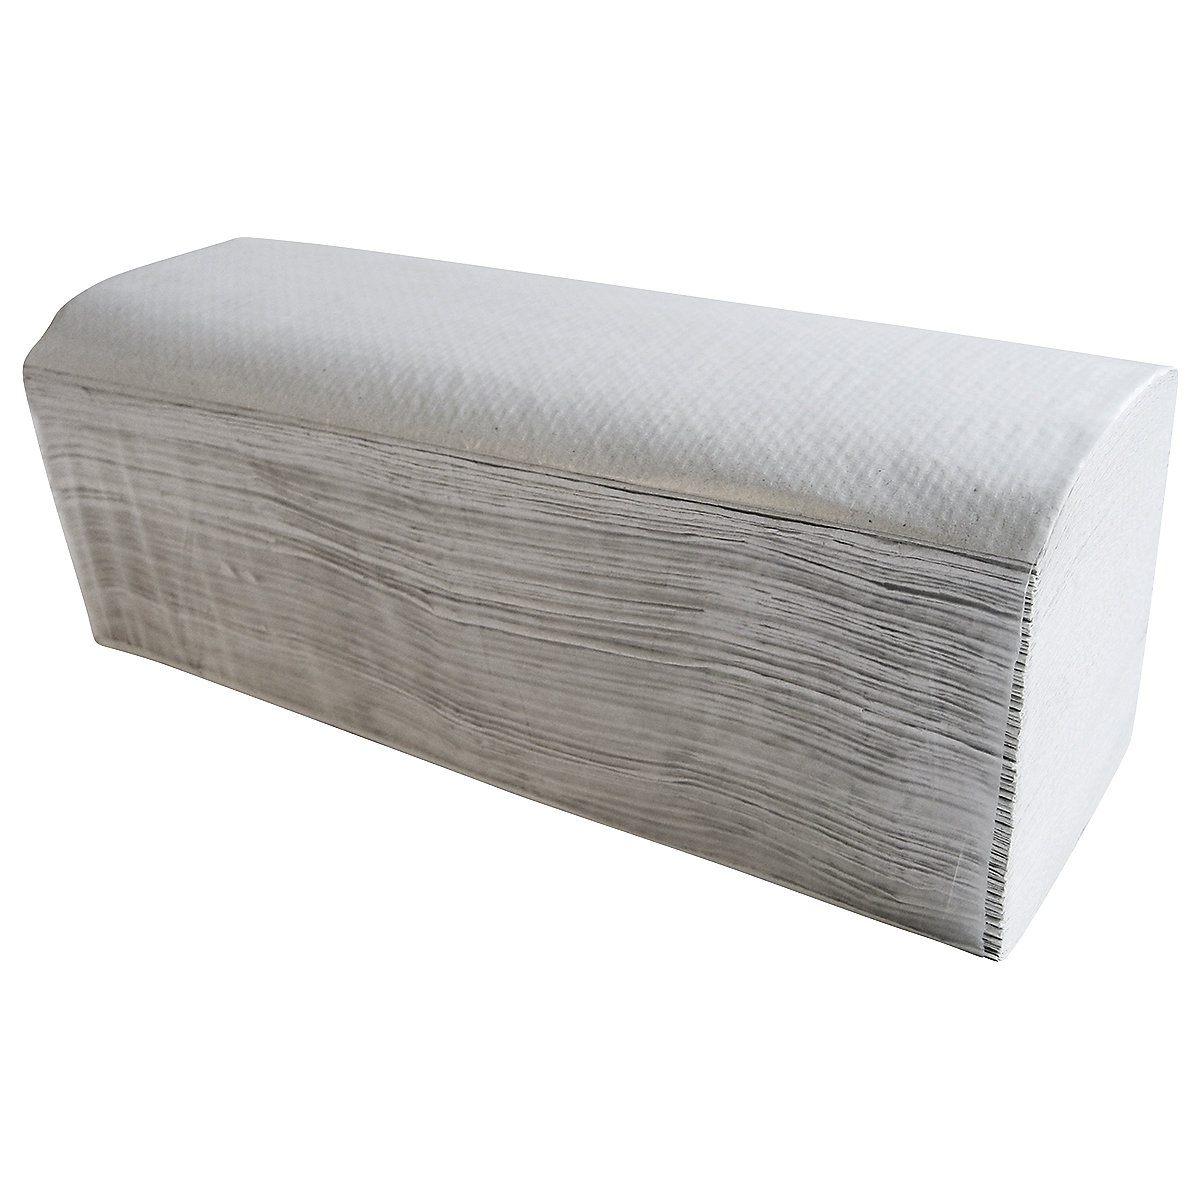 Składane ręczniki papierowe Recycling - CWS